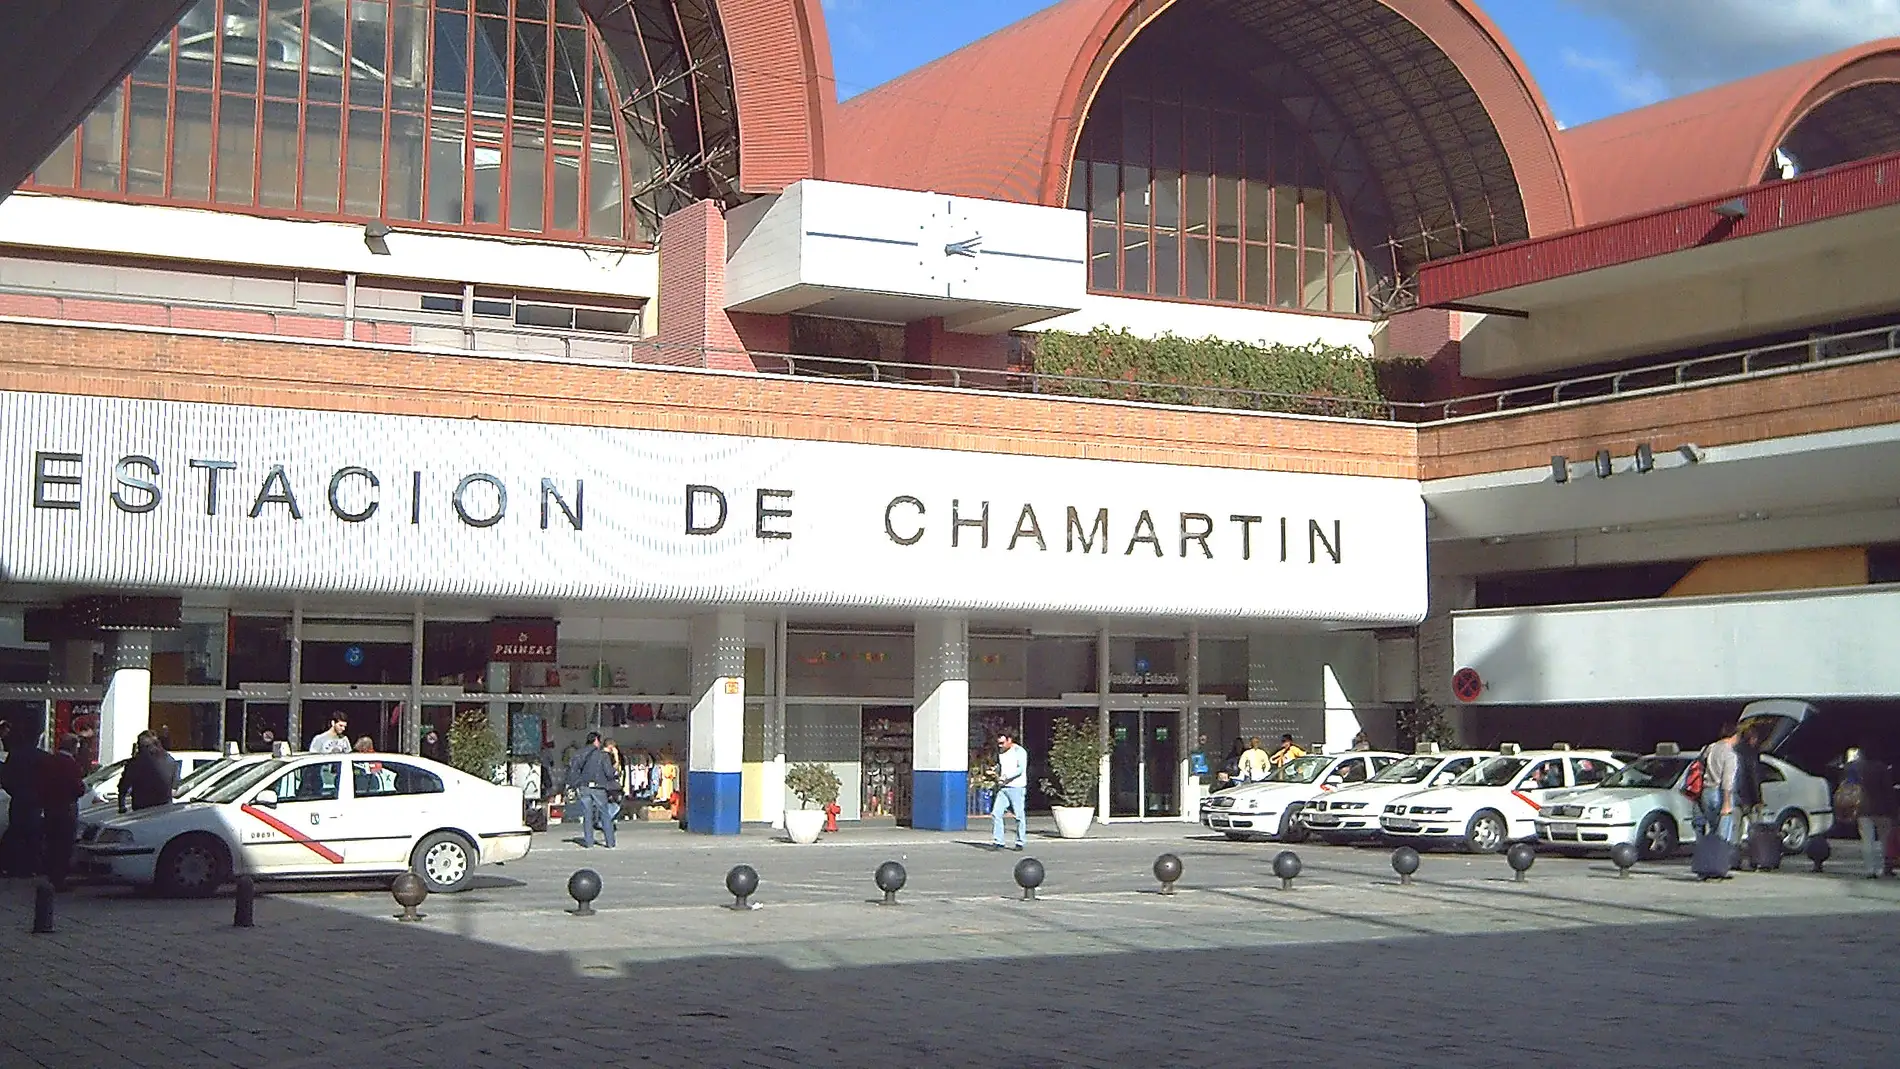 La cabecera de los trenes Madrid-Alicante-Murcia se mudan de Atocha a Chamartín este verano